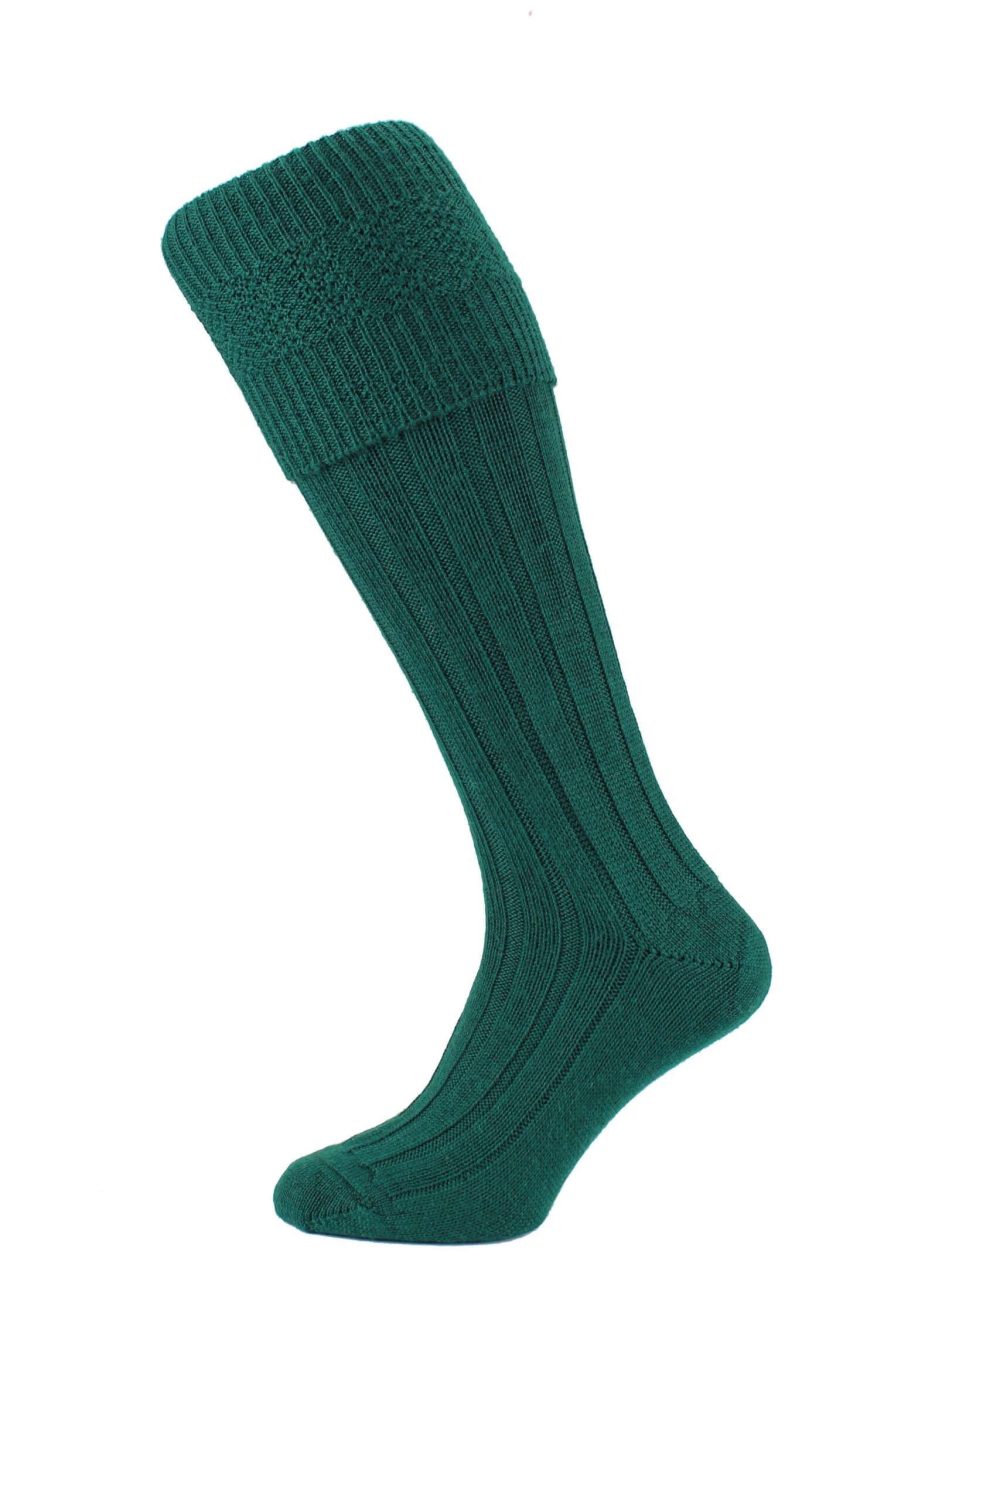 Bottle Green Kilt Socks